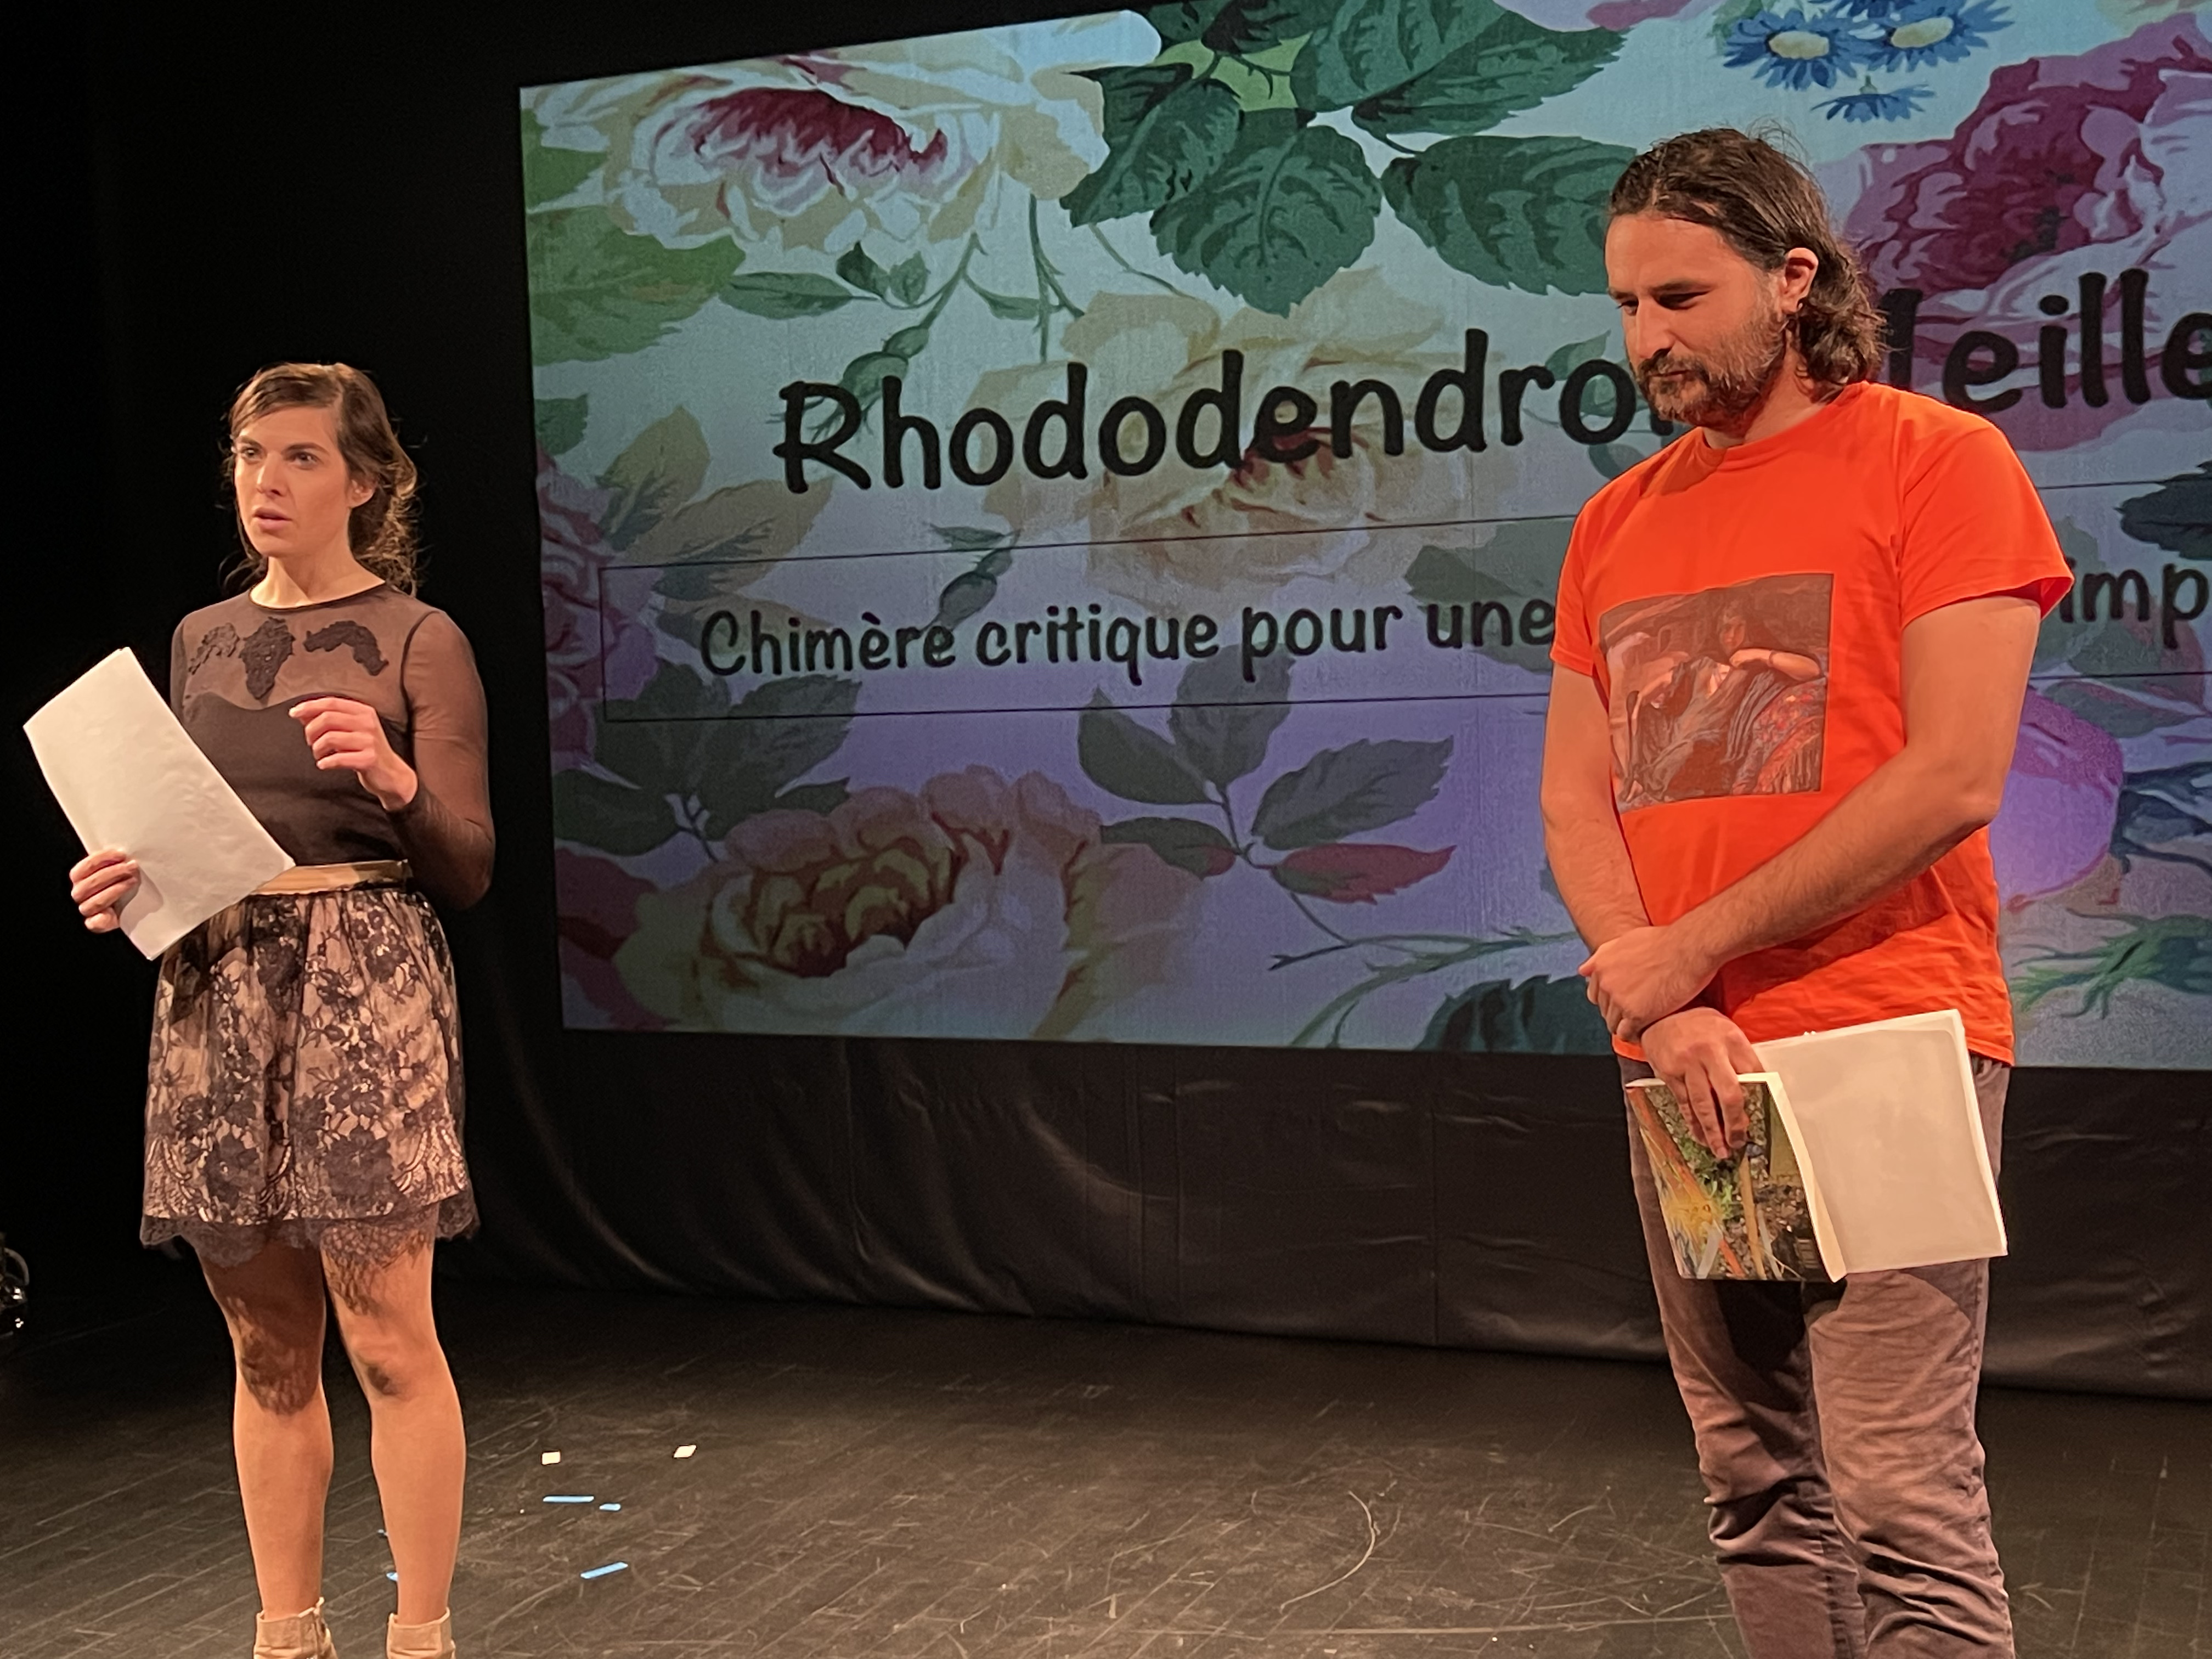 Cette photo montre deux artistes, un homme et une femme, debout devant un écran sur lequel est écrit Rhododendron. Ils tiennent tous les deux une feuille de papier